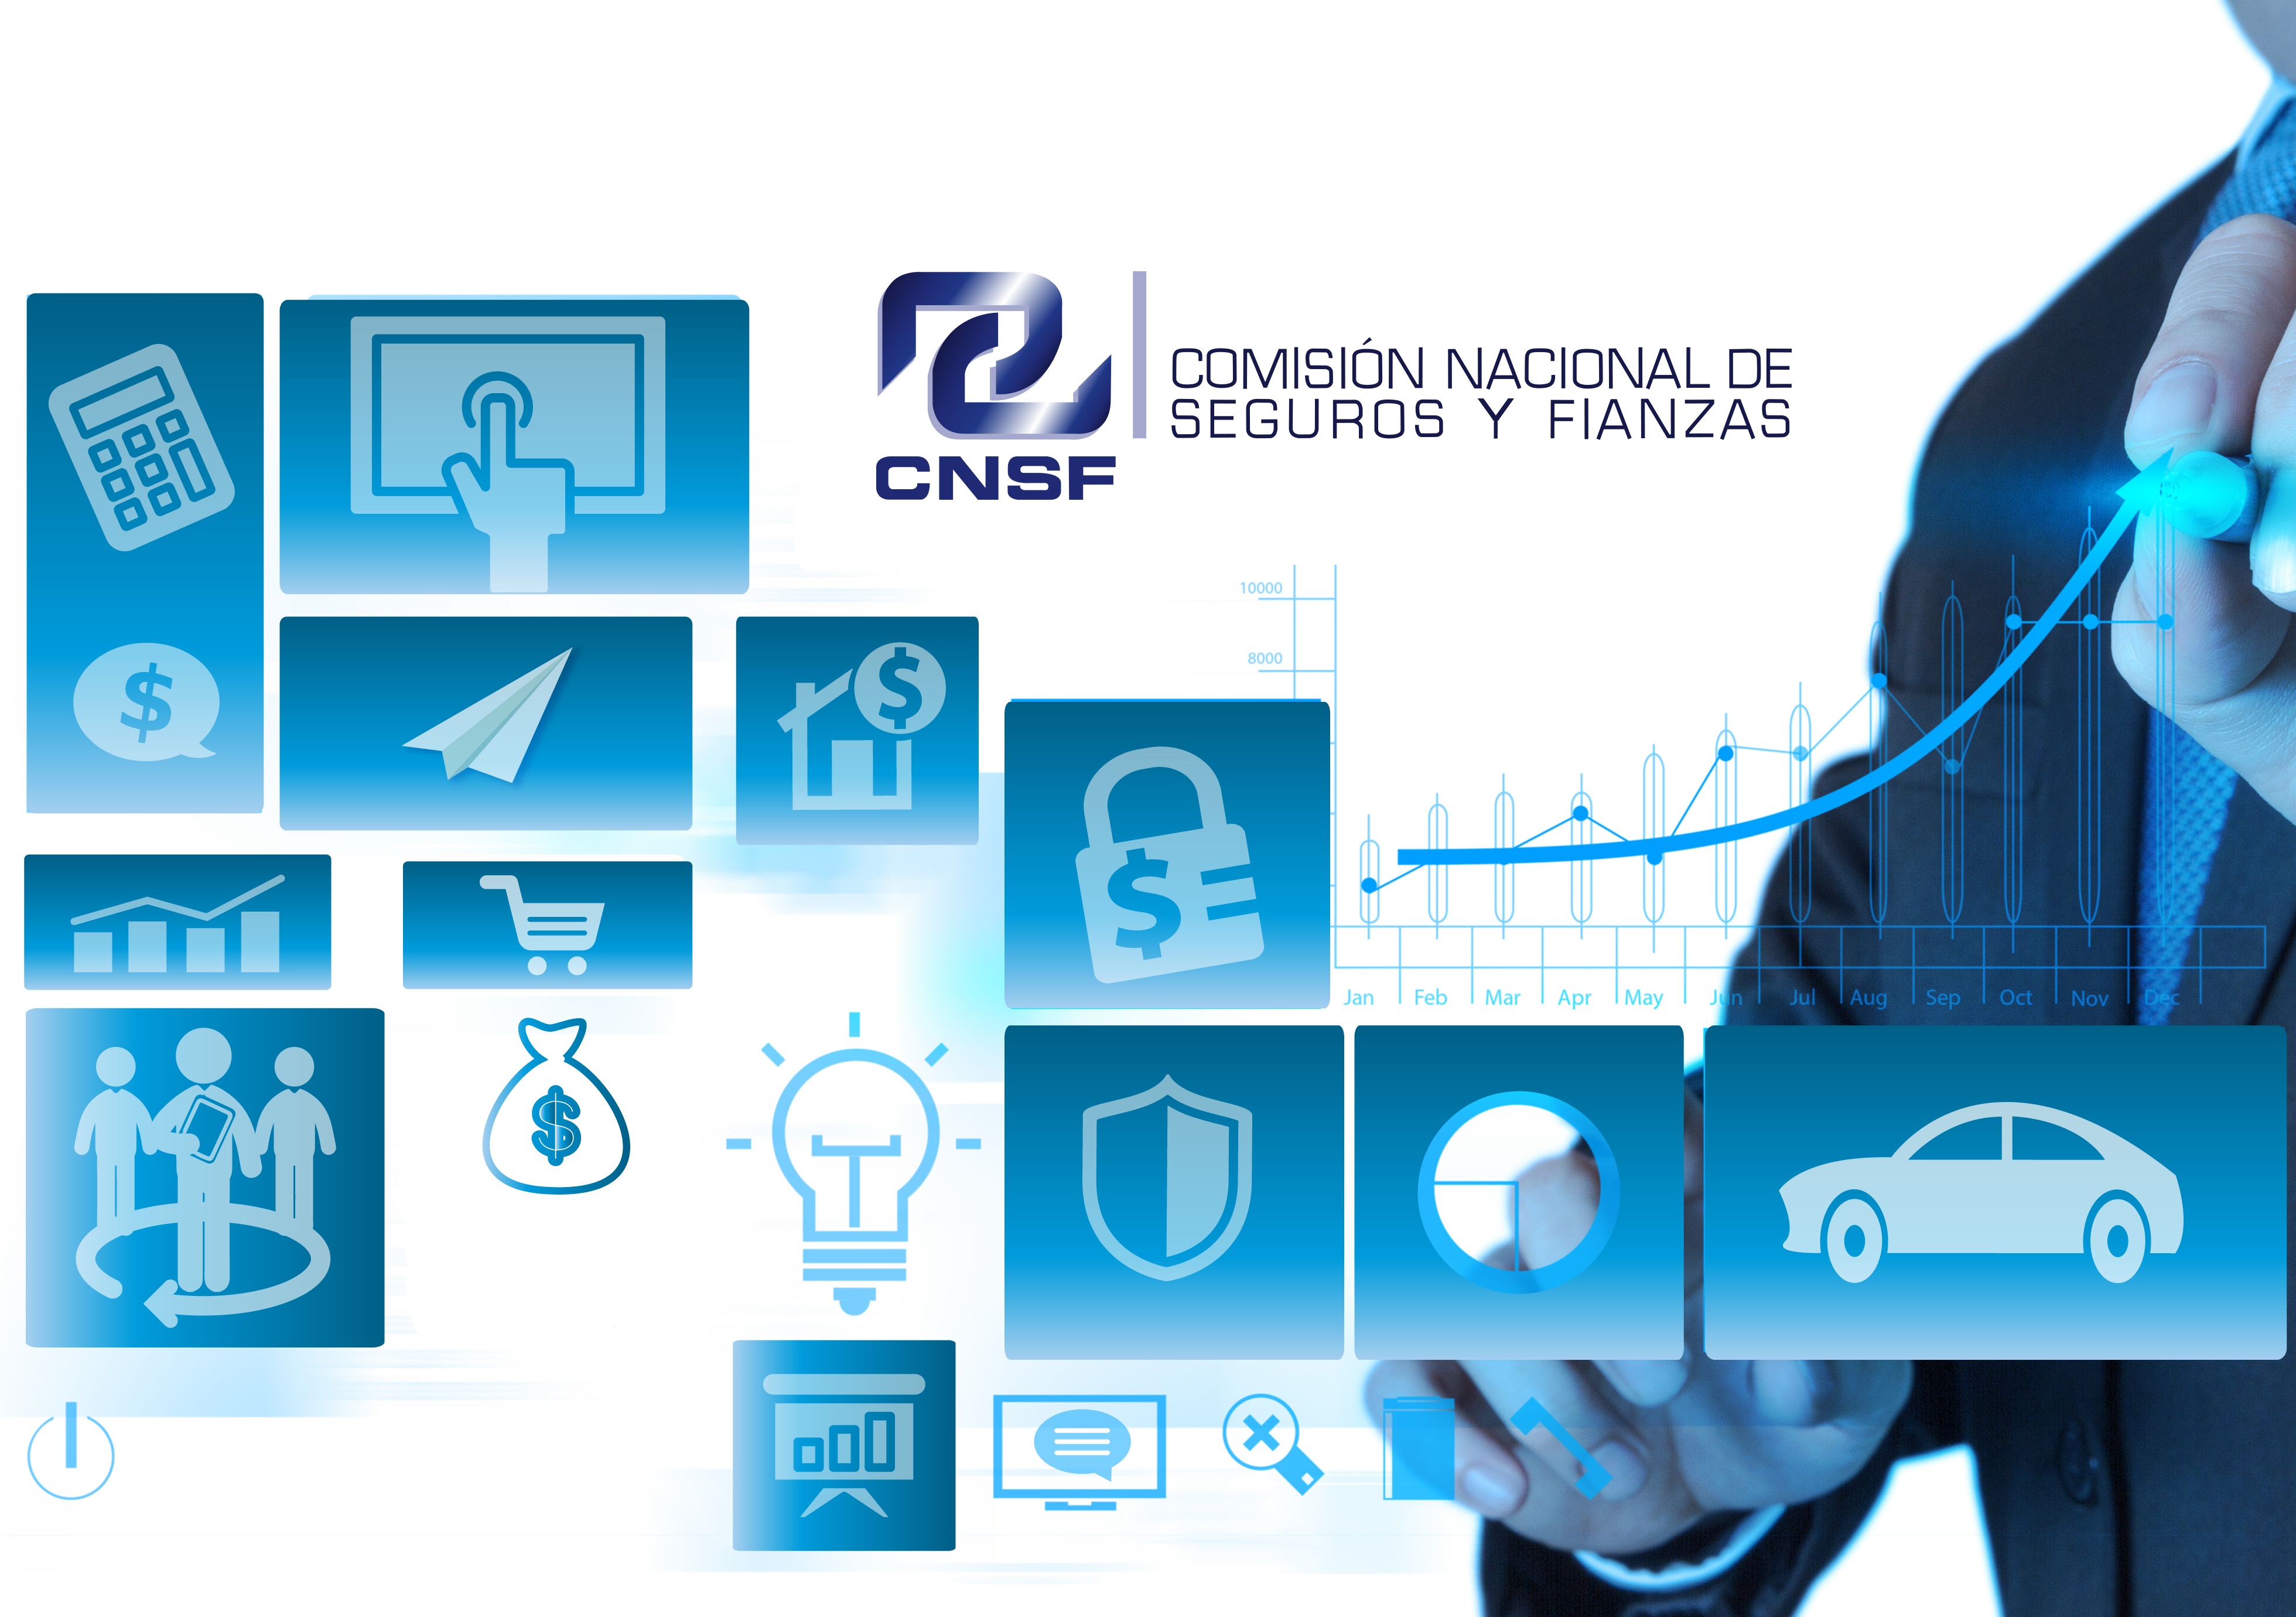 Perfil de la Comisión Nacional de Seguros y Fianzas (CNSF)